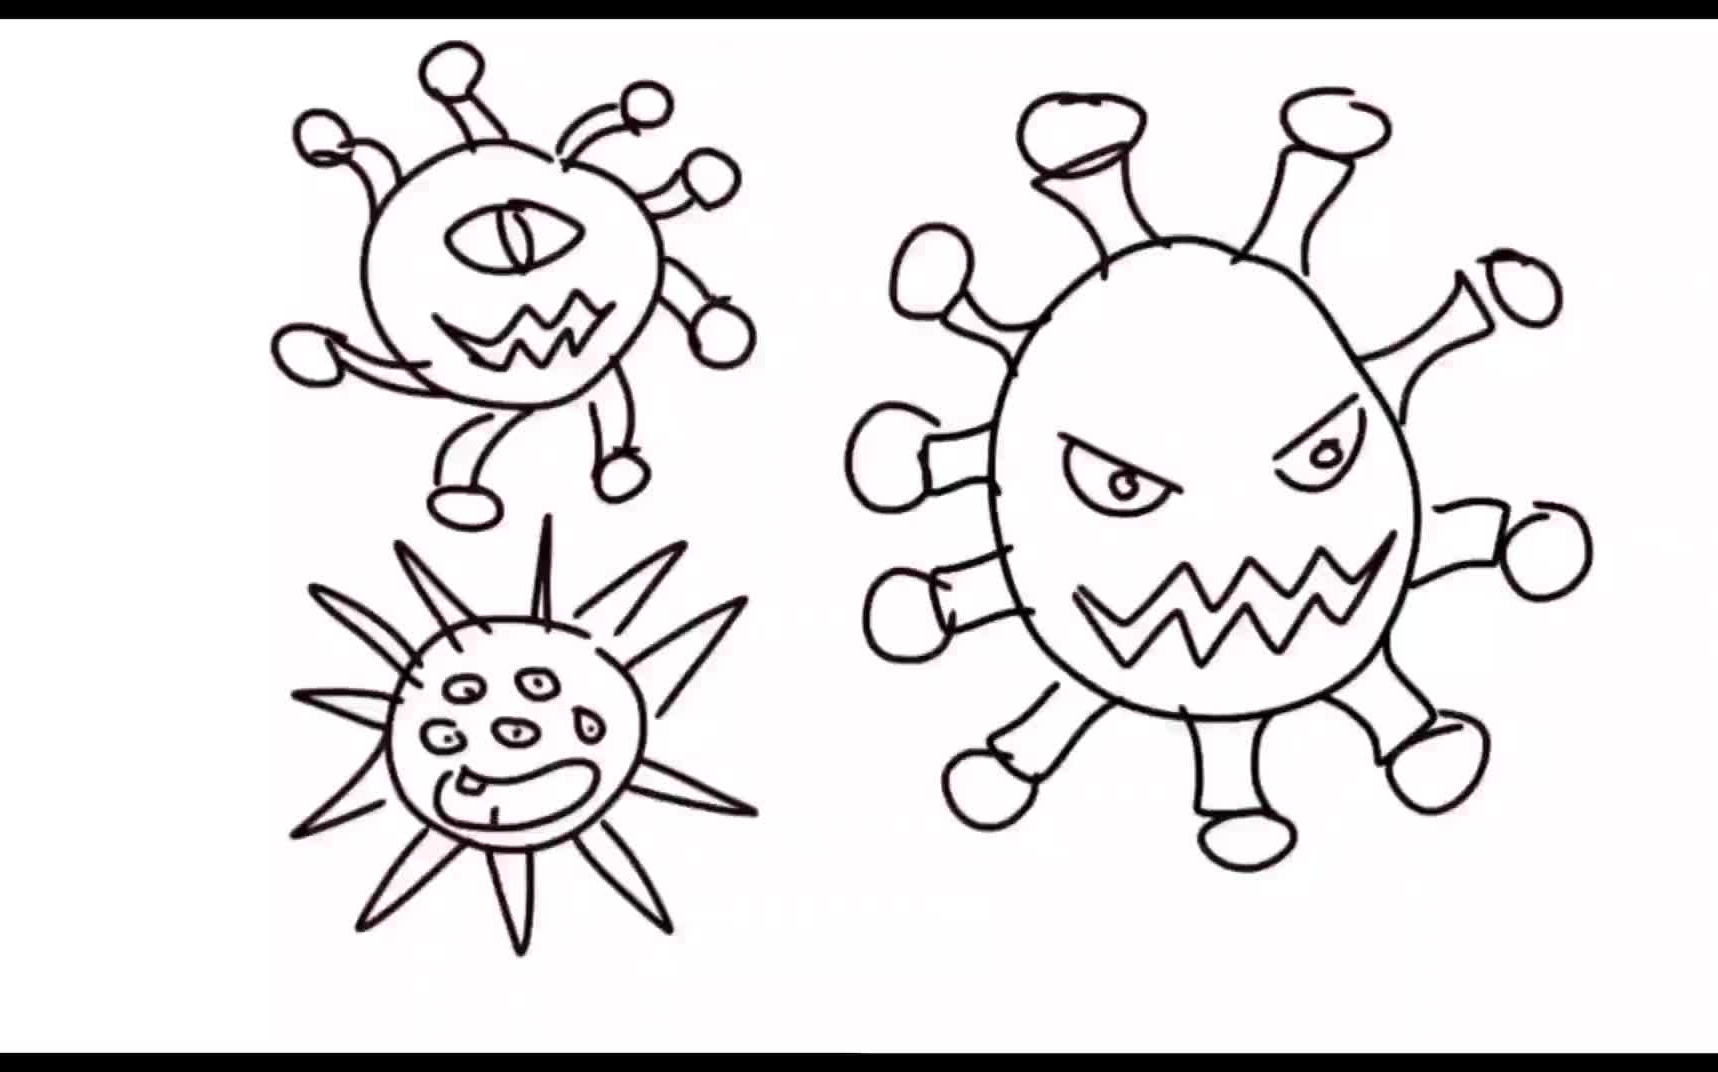 二年级绘画病毒图片